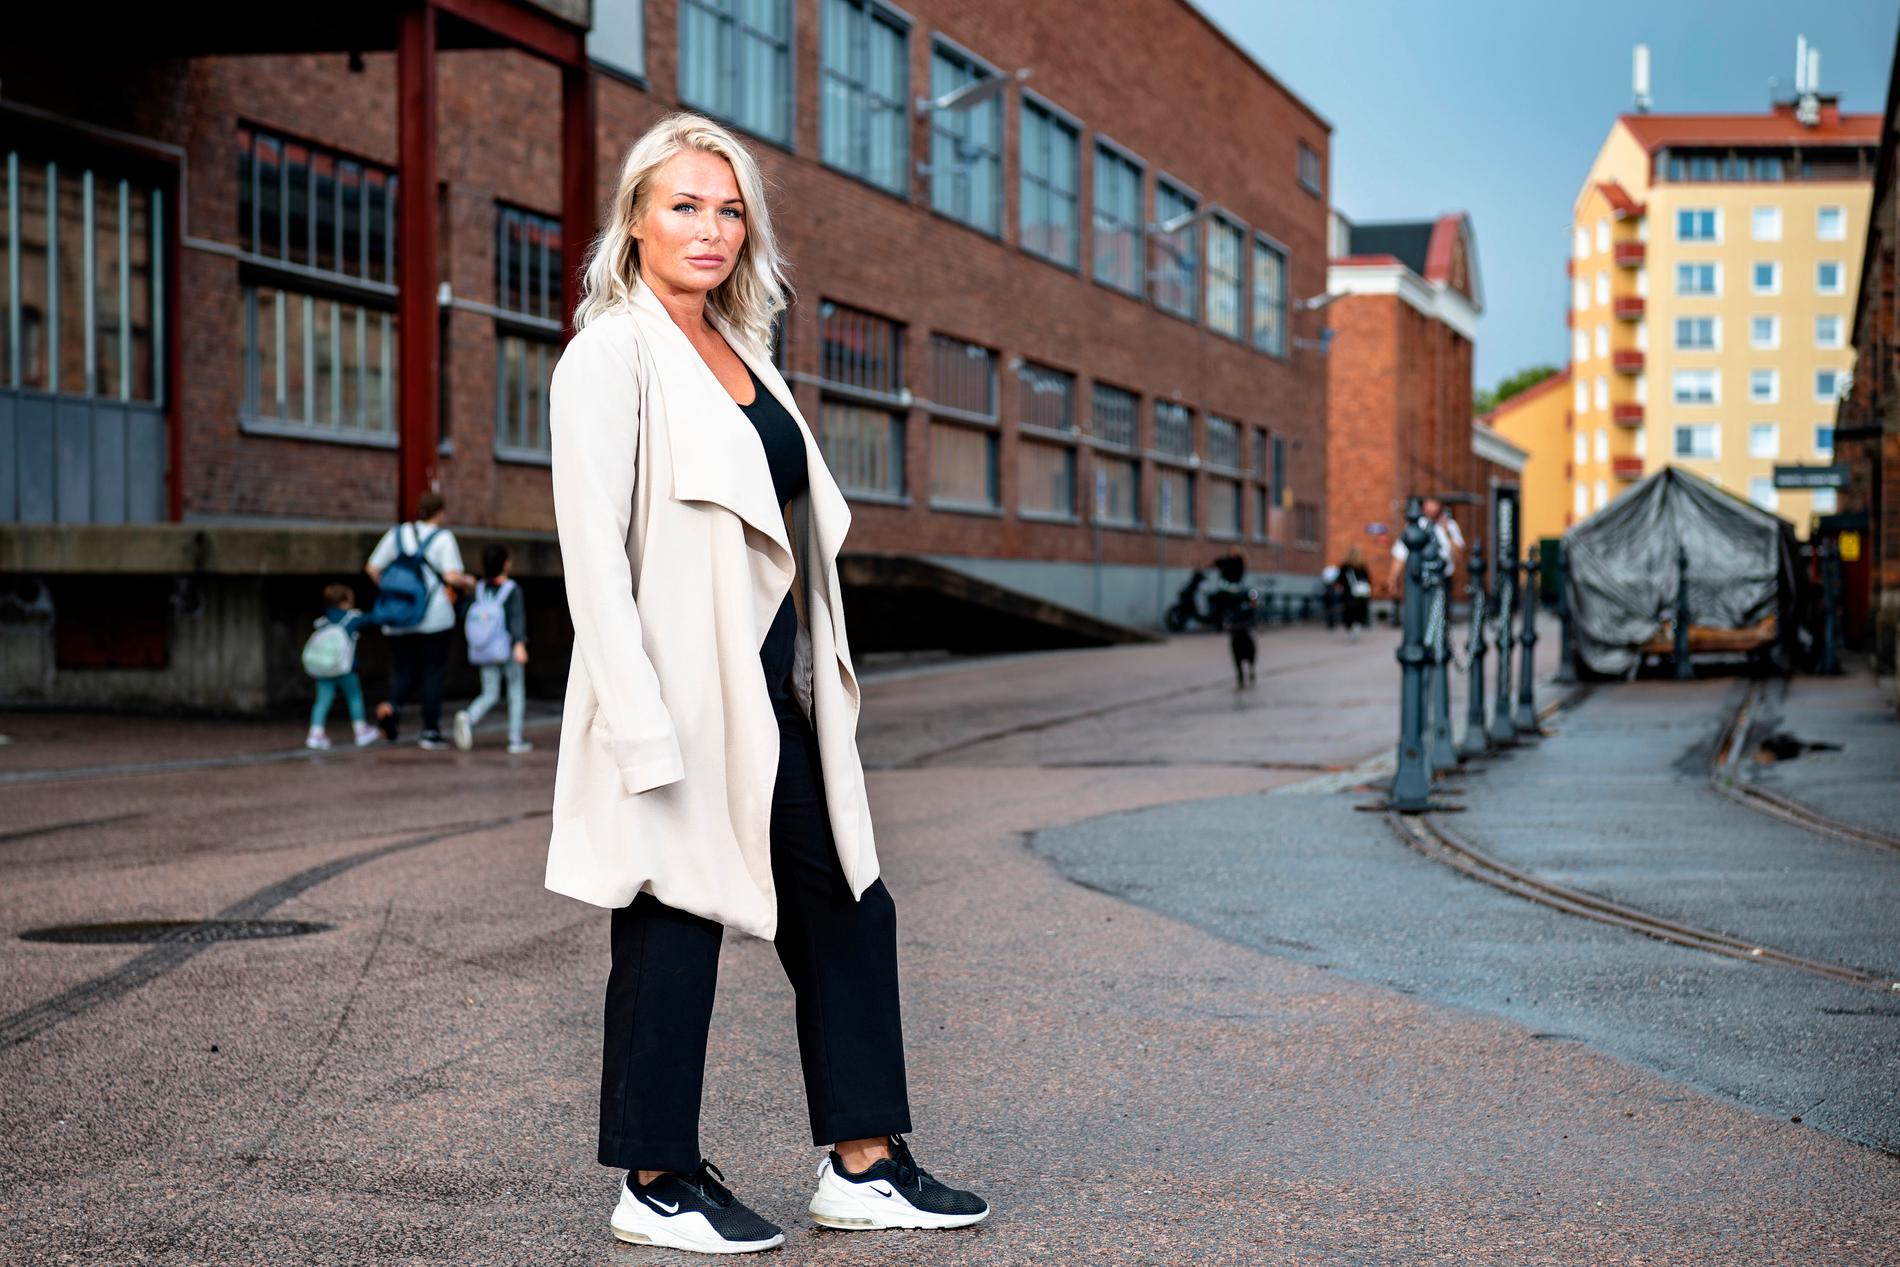 Mötet med Svenska hjältar är första gången Heidi Jortikka är tillbaka på platsen efter händelsen, och hon säger att det är jobbigt. ”Just här låg han som var svårast skadad” säger Heidi. 